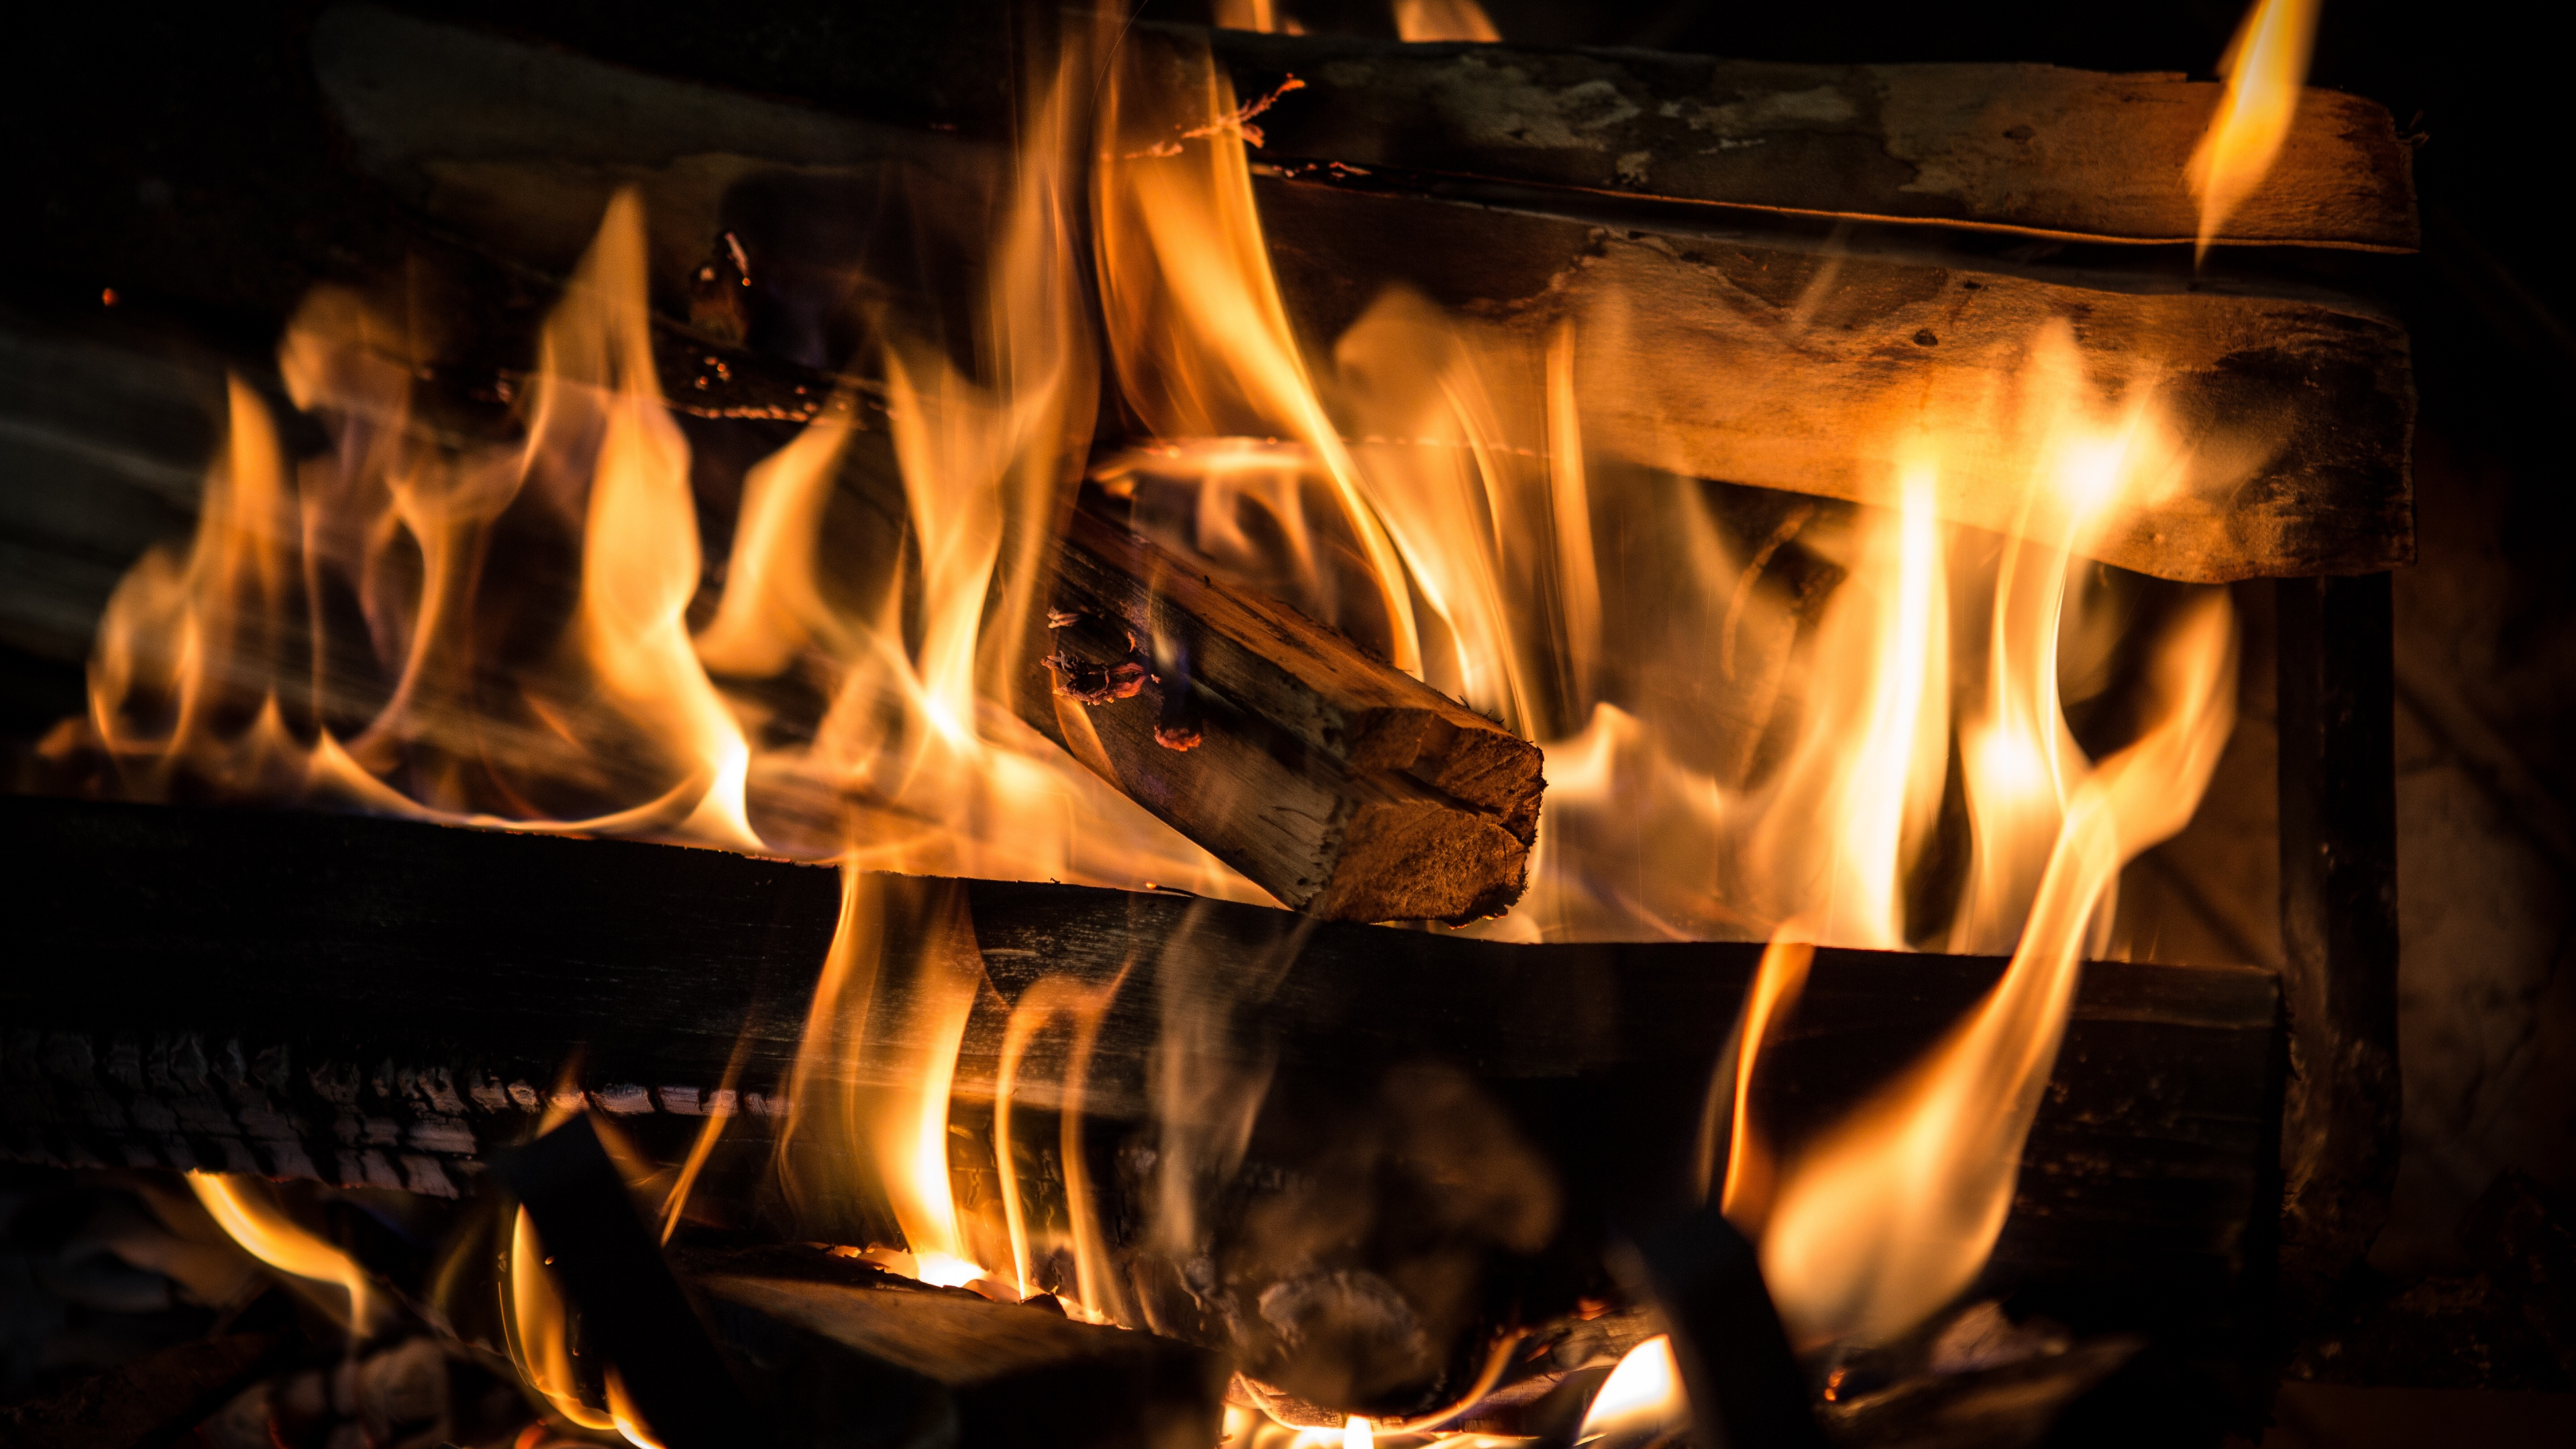 火焰, 炉子, 热, 篝火, 壁炉 壁纸 3840x2160 允许